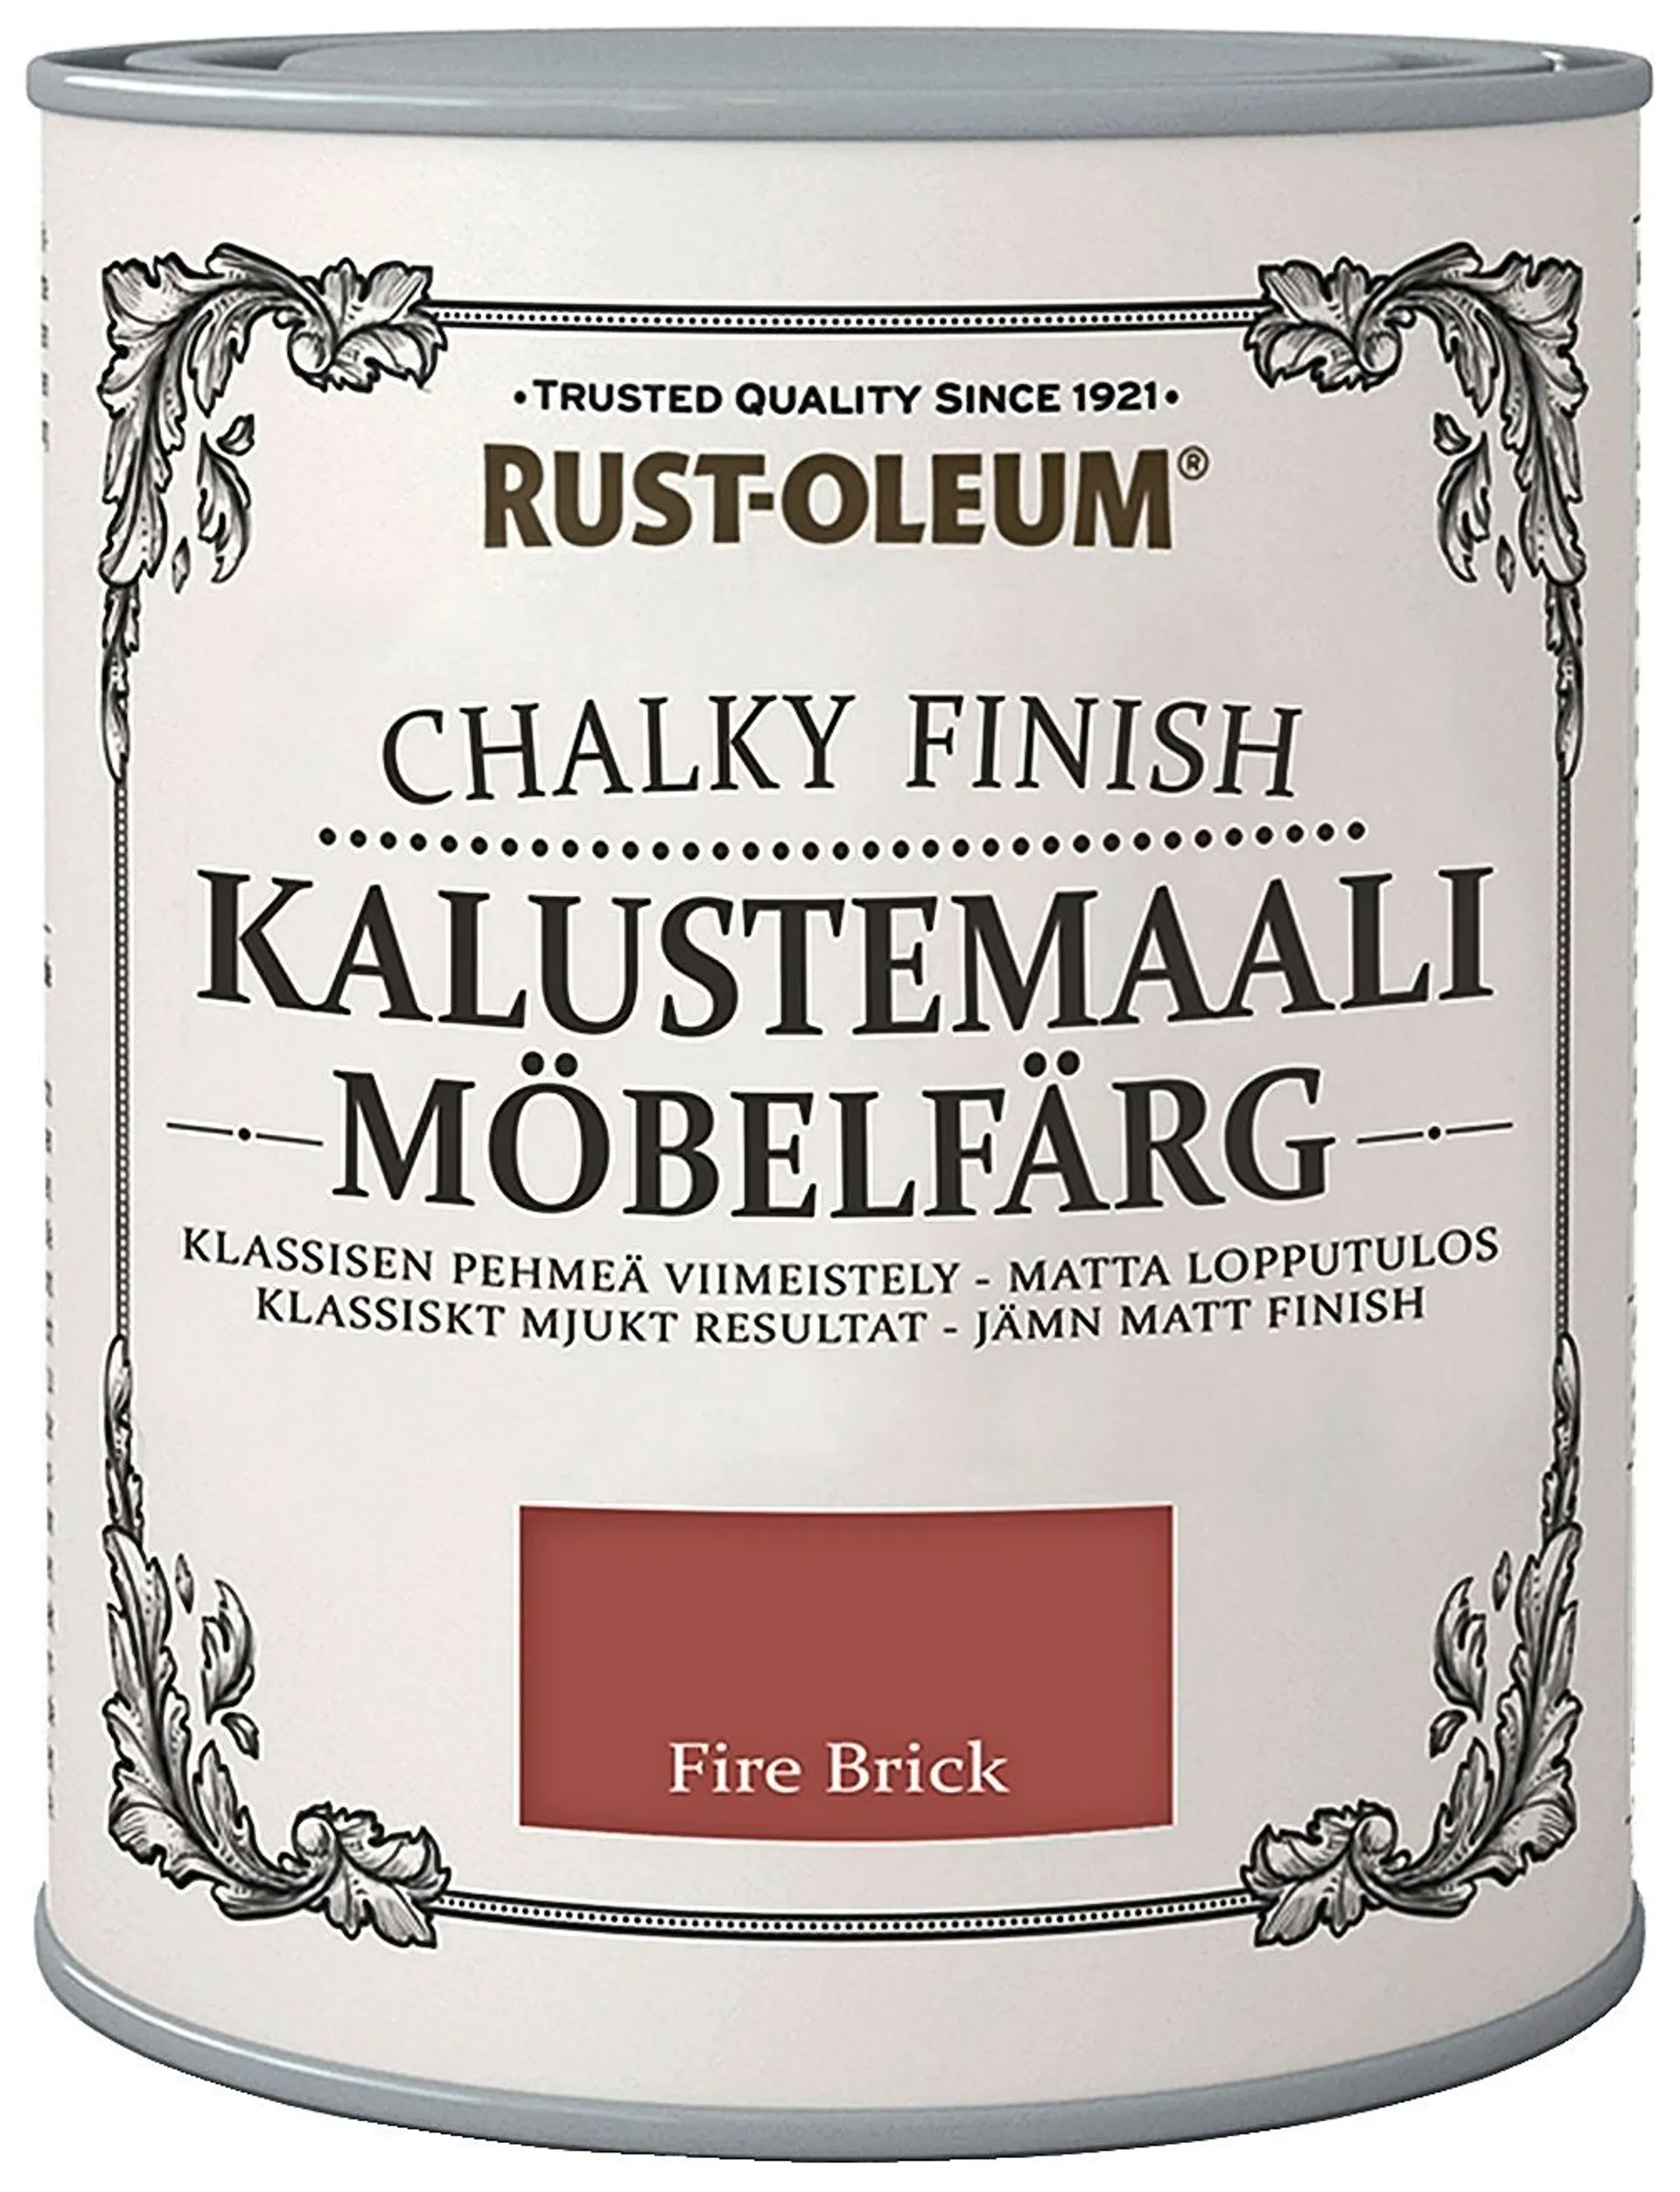 Rust-Oleum Chalky Finish Kalustemaali 750ml Fire Brick - 1